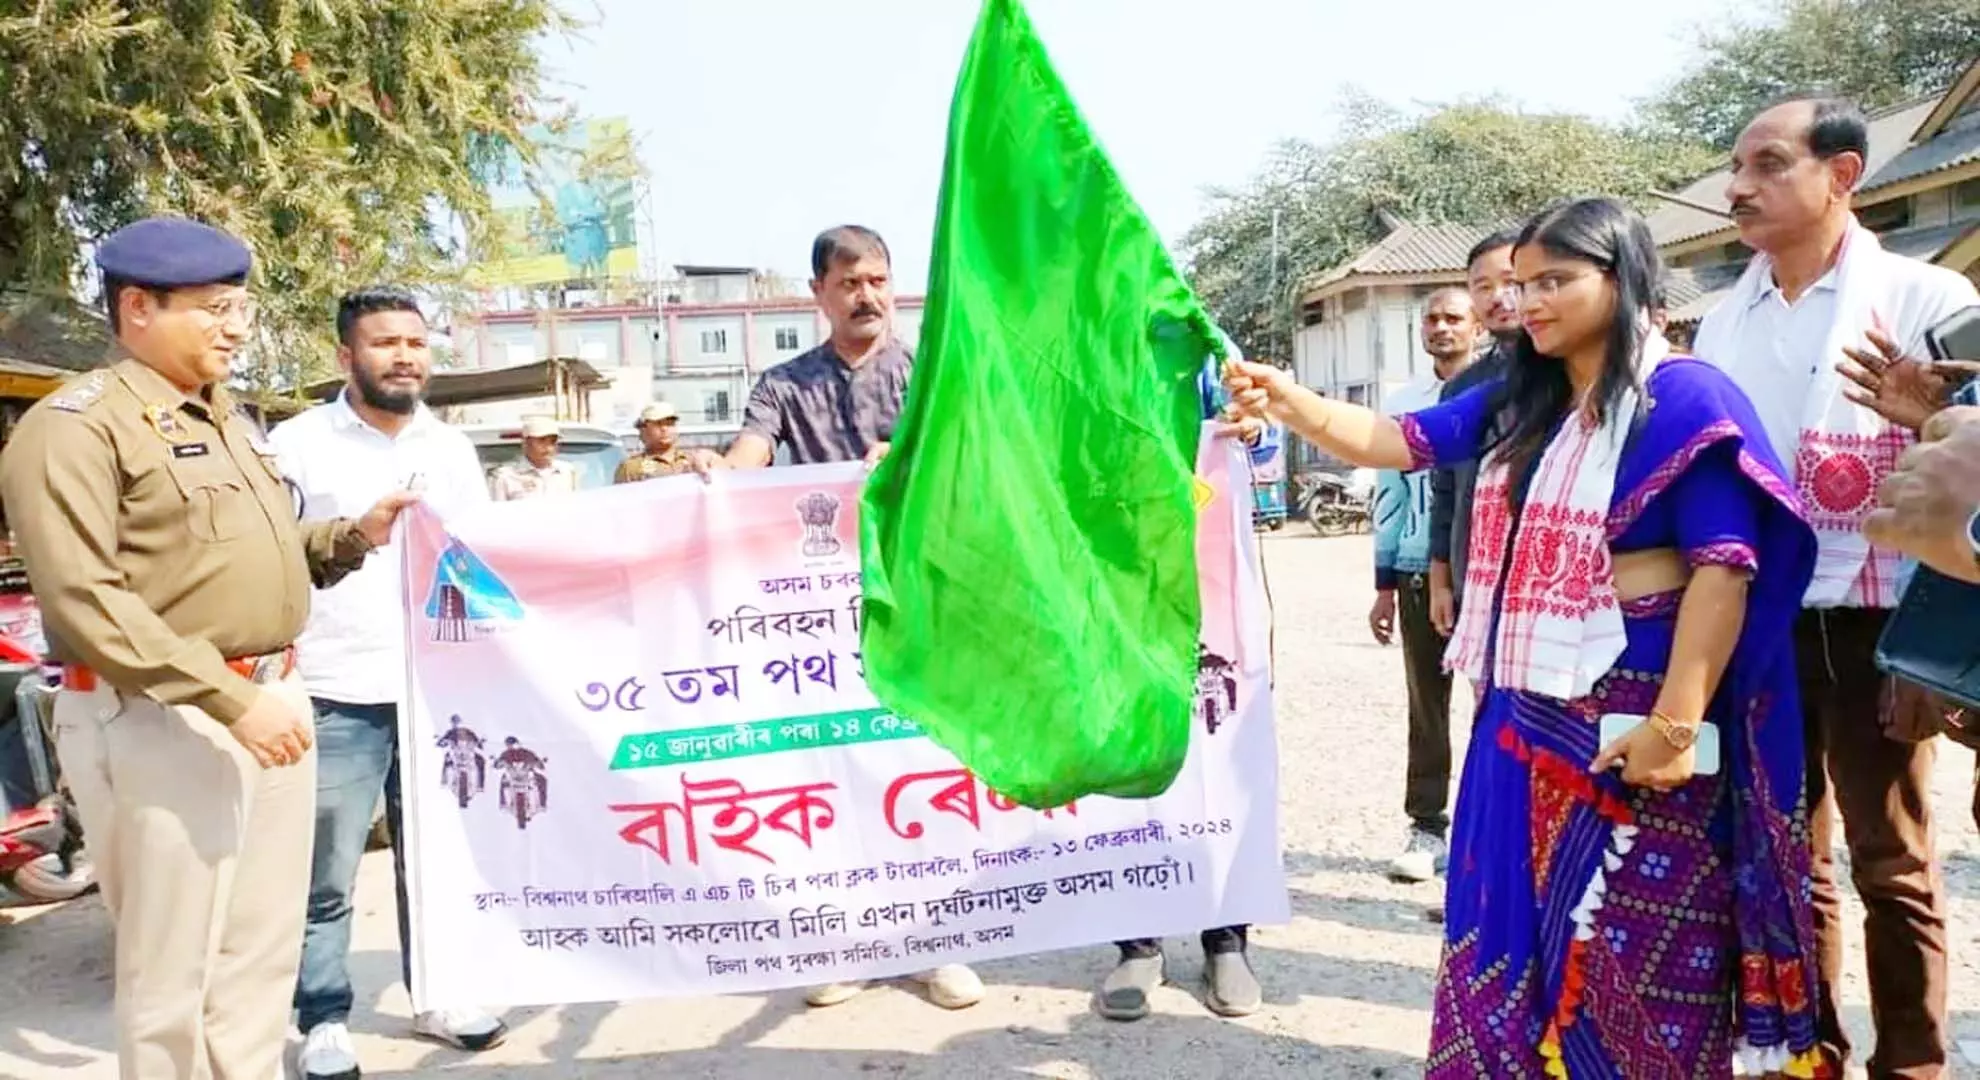 असम: बिश्वनाथ में सड़क सुरक्षा माह पर कार्यक्रम आयोजित